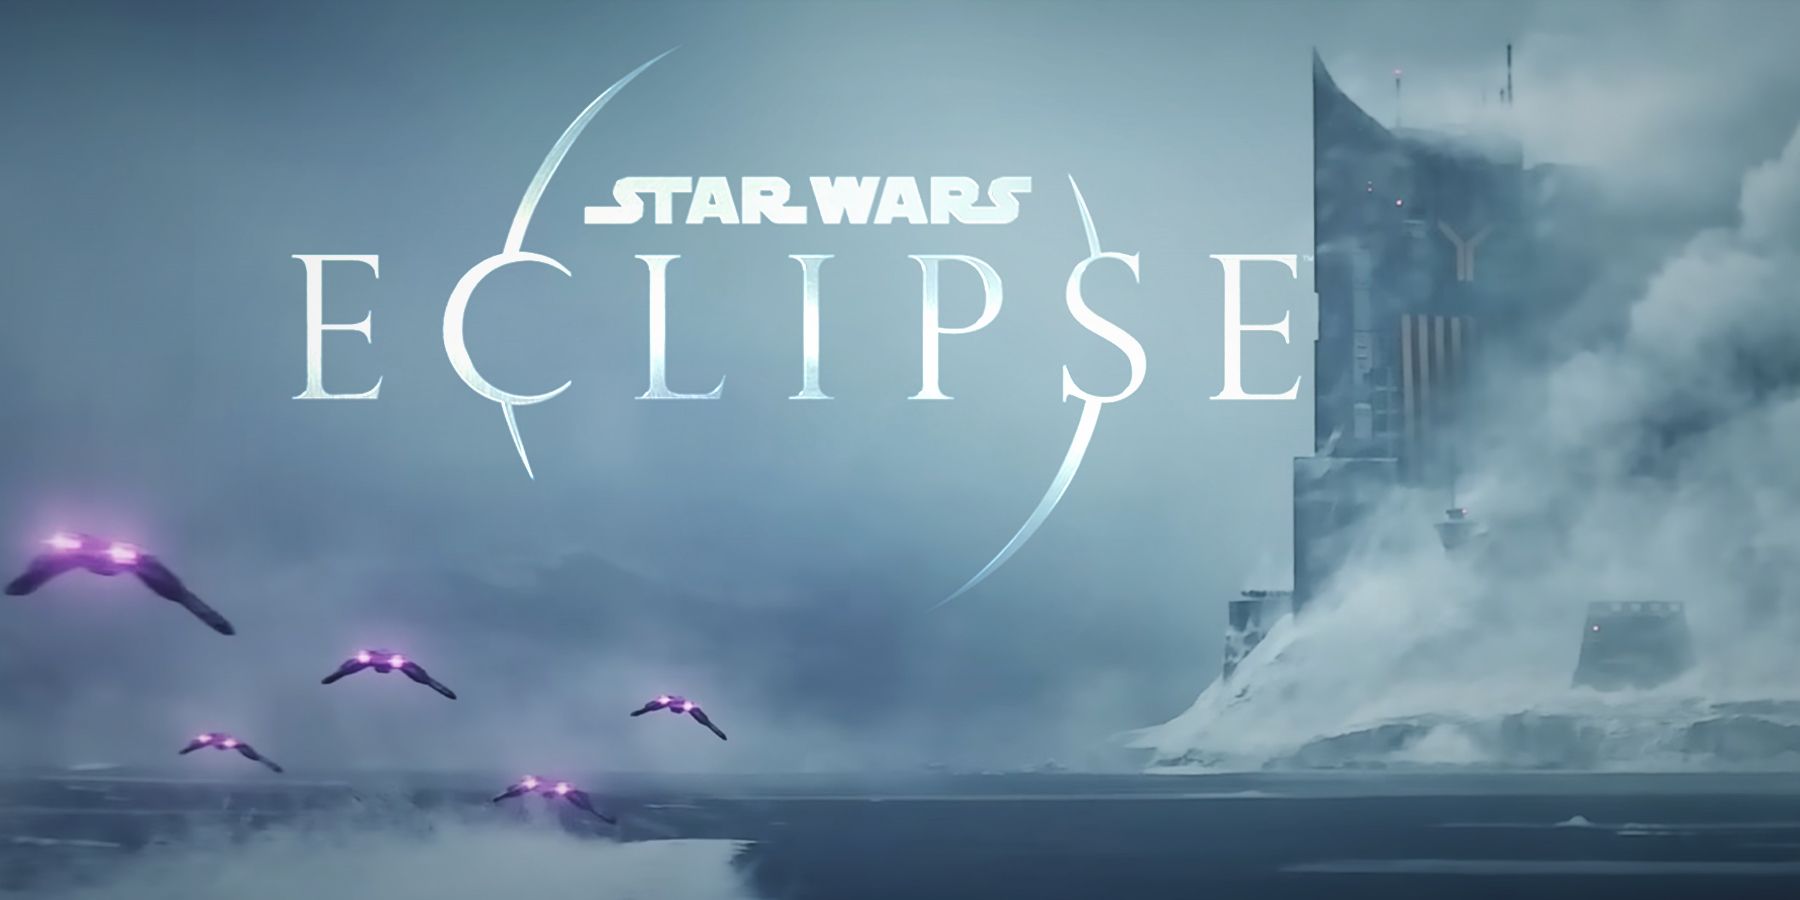 Star Wars Eclipse cinematic reveal trailer beach spaceship fleet screenshot with logo